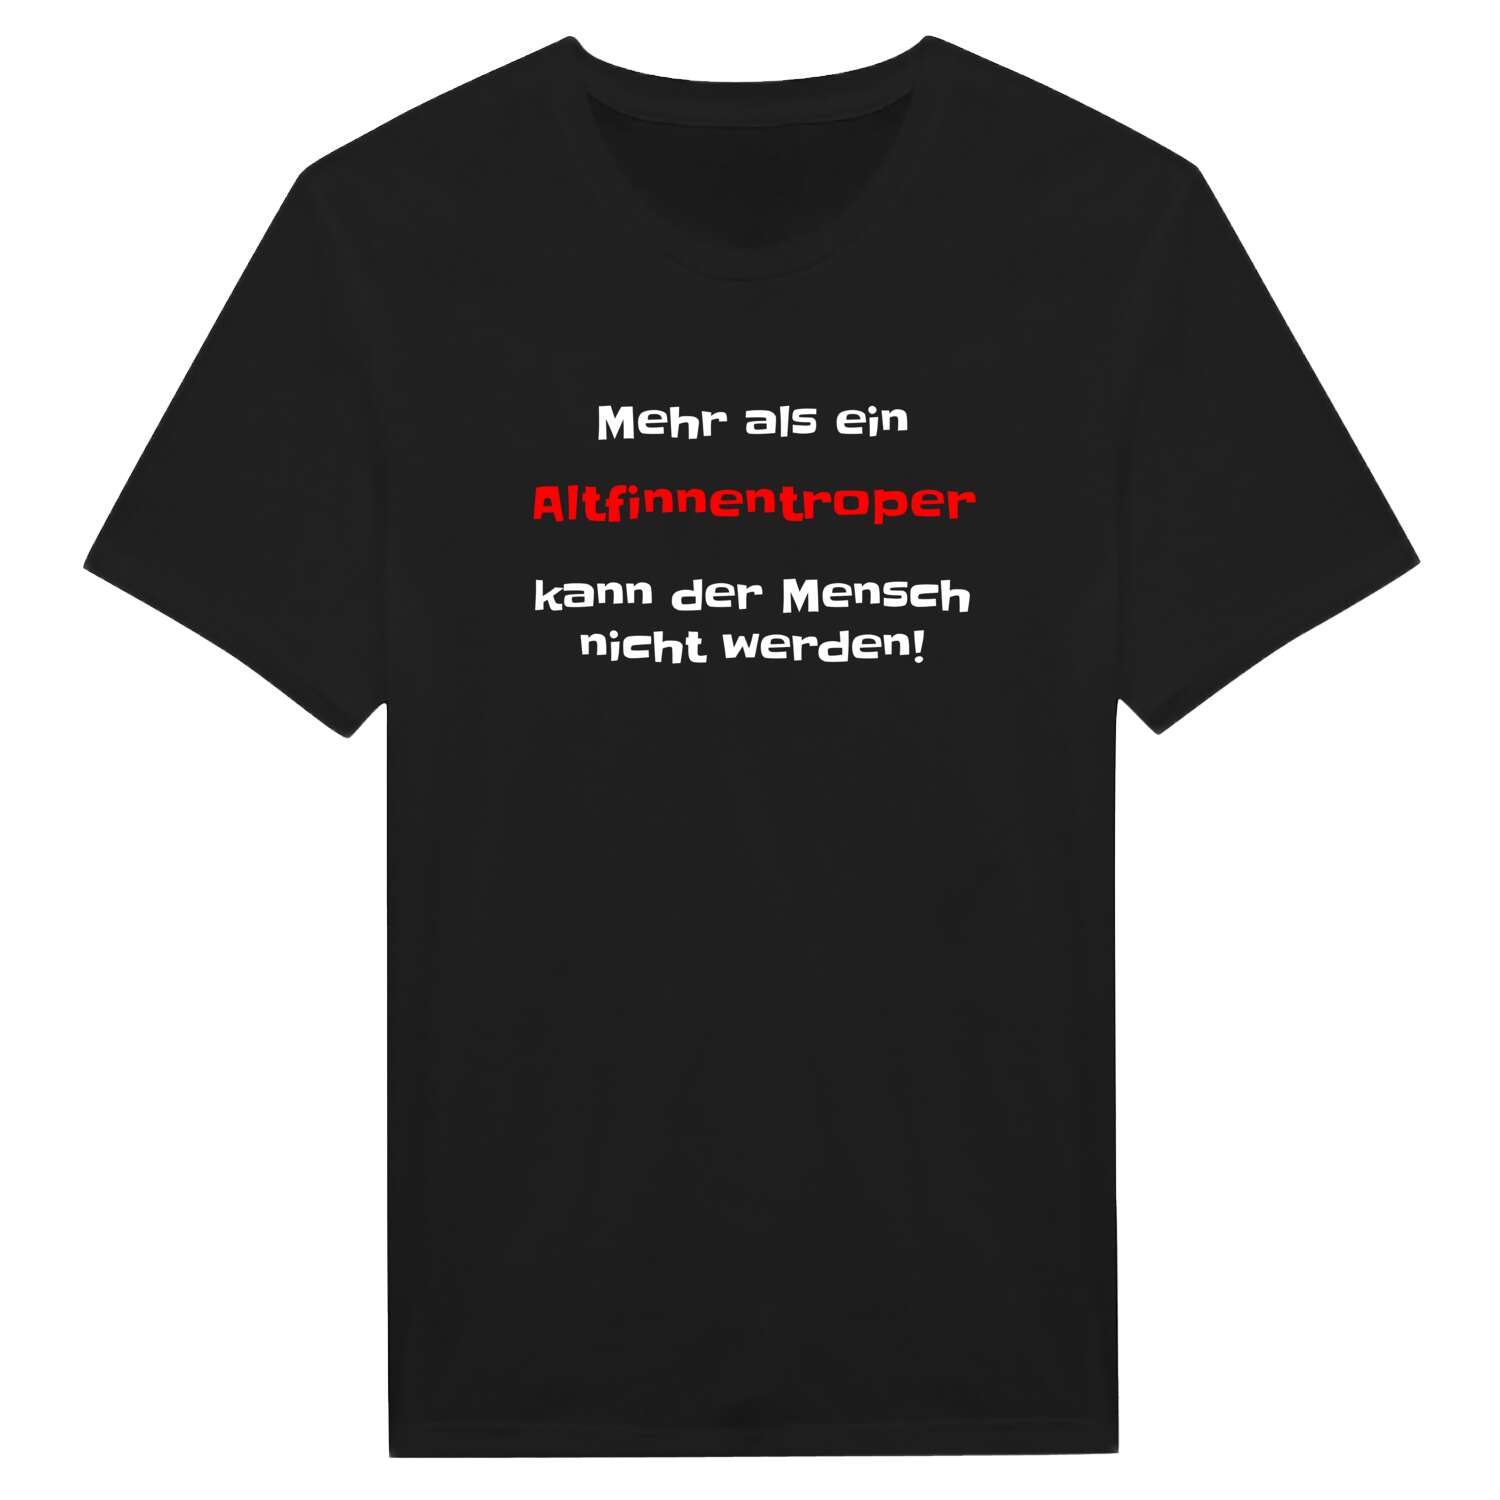 Altfinnentrop T-Shirt »Mehr als ein«